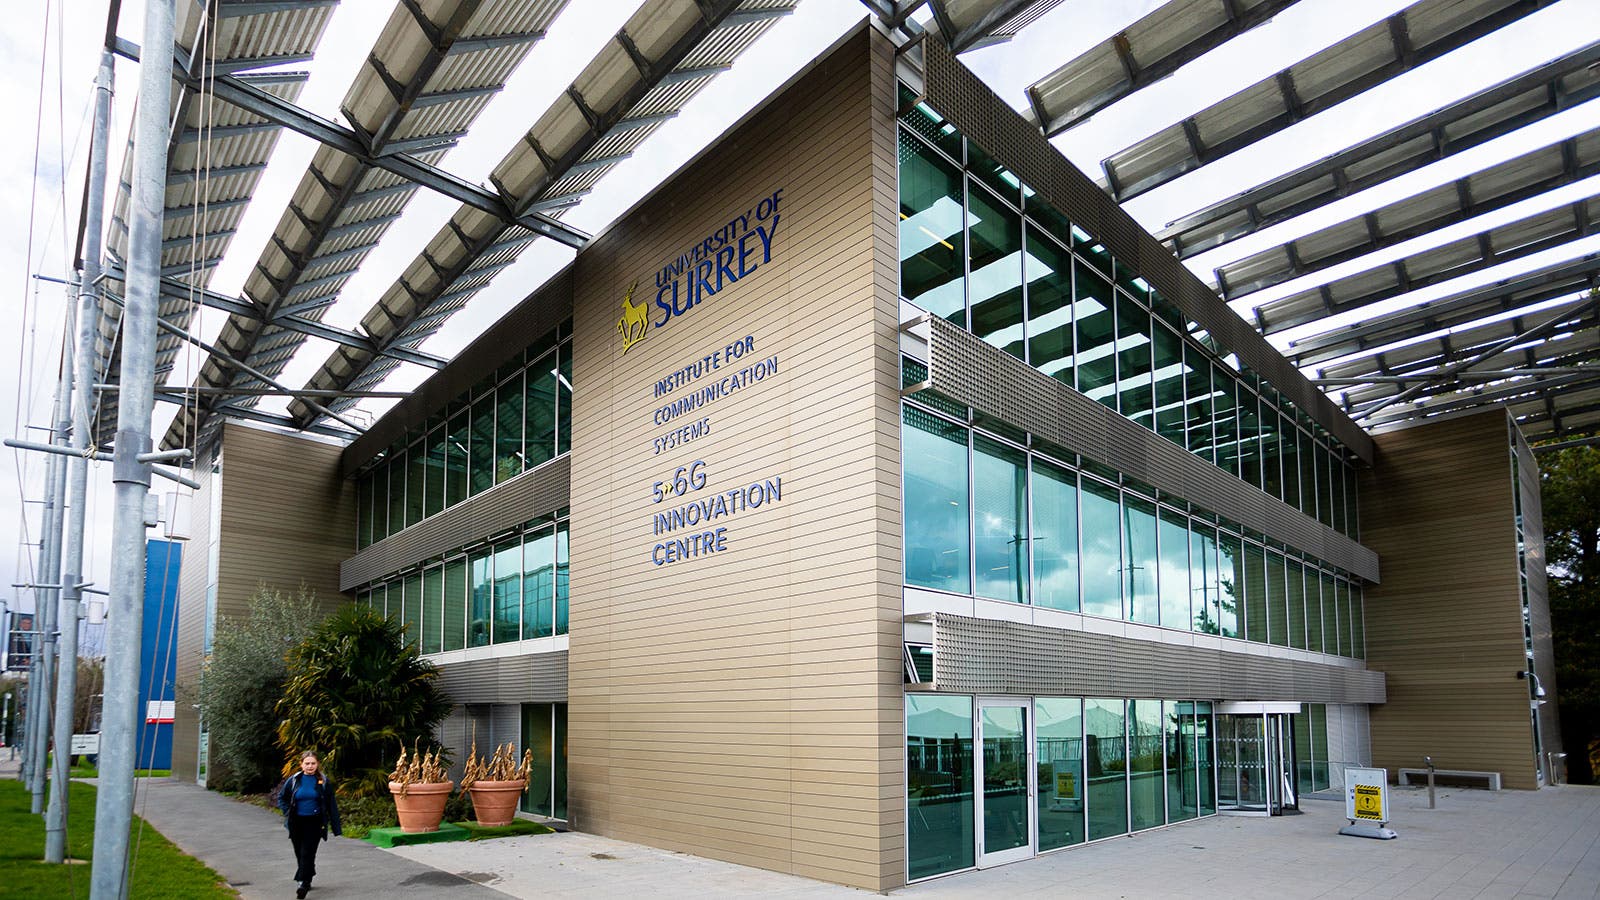 Surrey campus